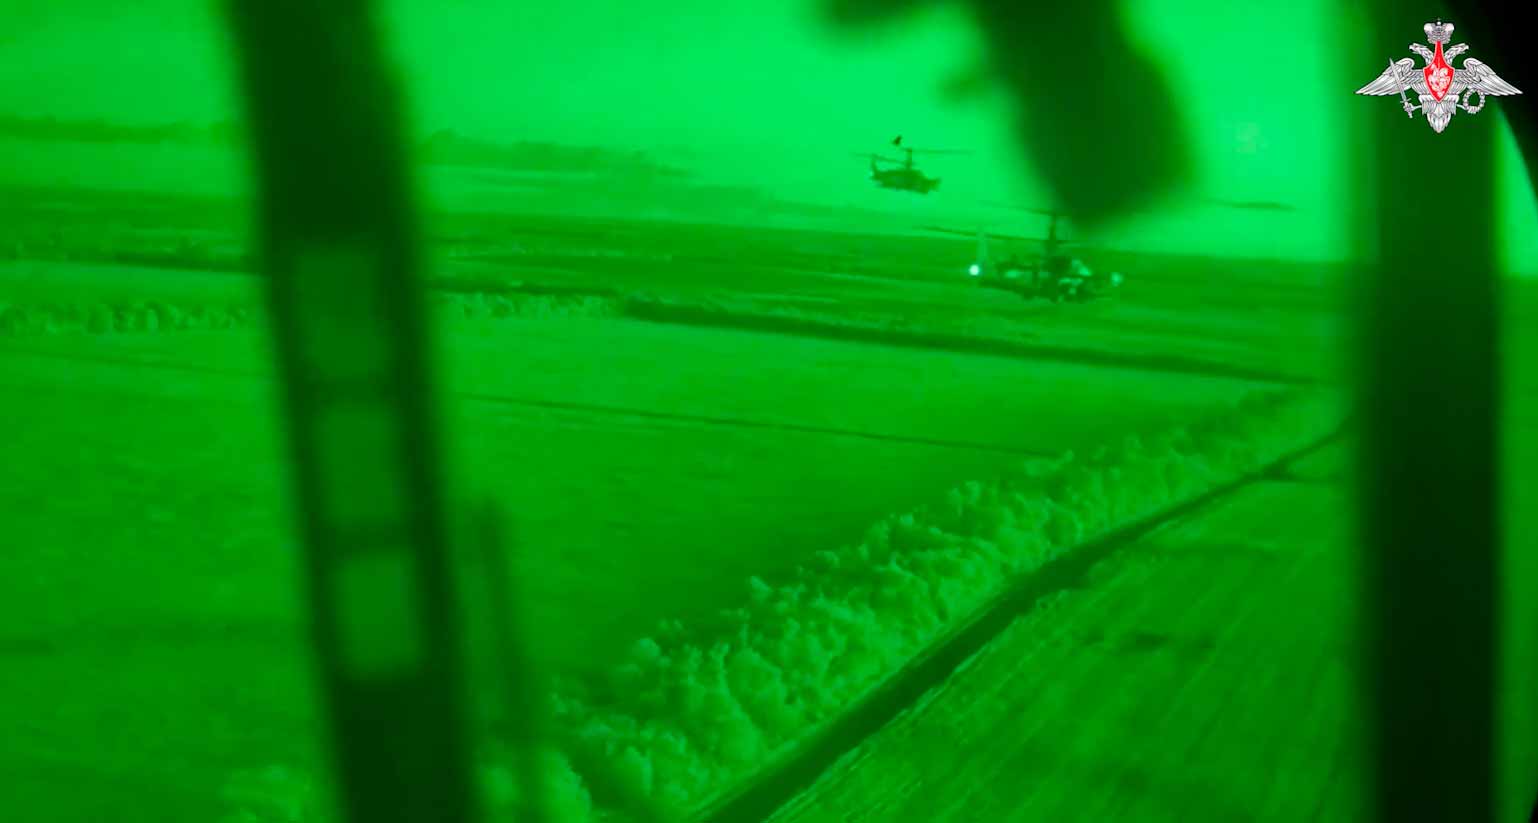 El video muestra la operación nocturna de los helicópteros de ataque Ka-52. Fuente, foto y video: Telegram t.me/mod_russia